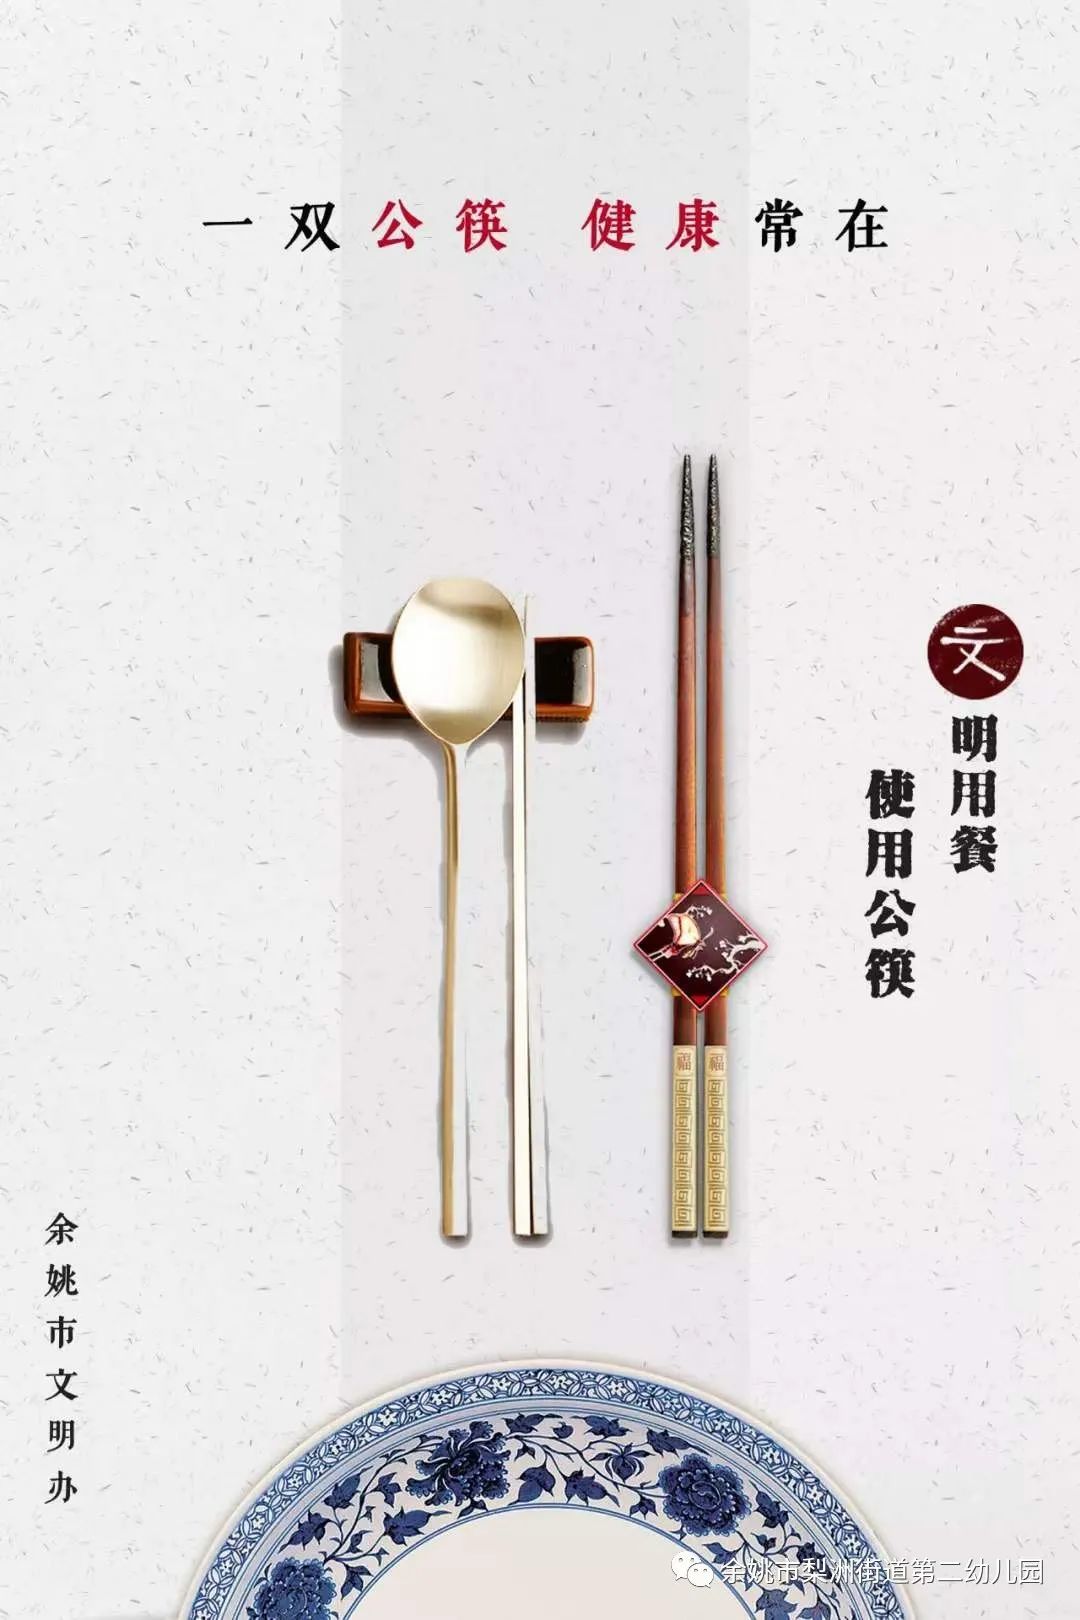 巧施“三只筷”！鹿城仰义让“公筷公勺”成为健康生活标配 - 鹿城新闻网